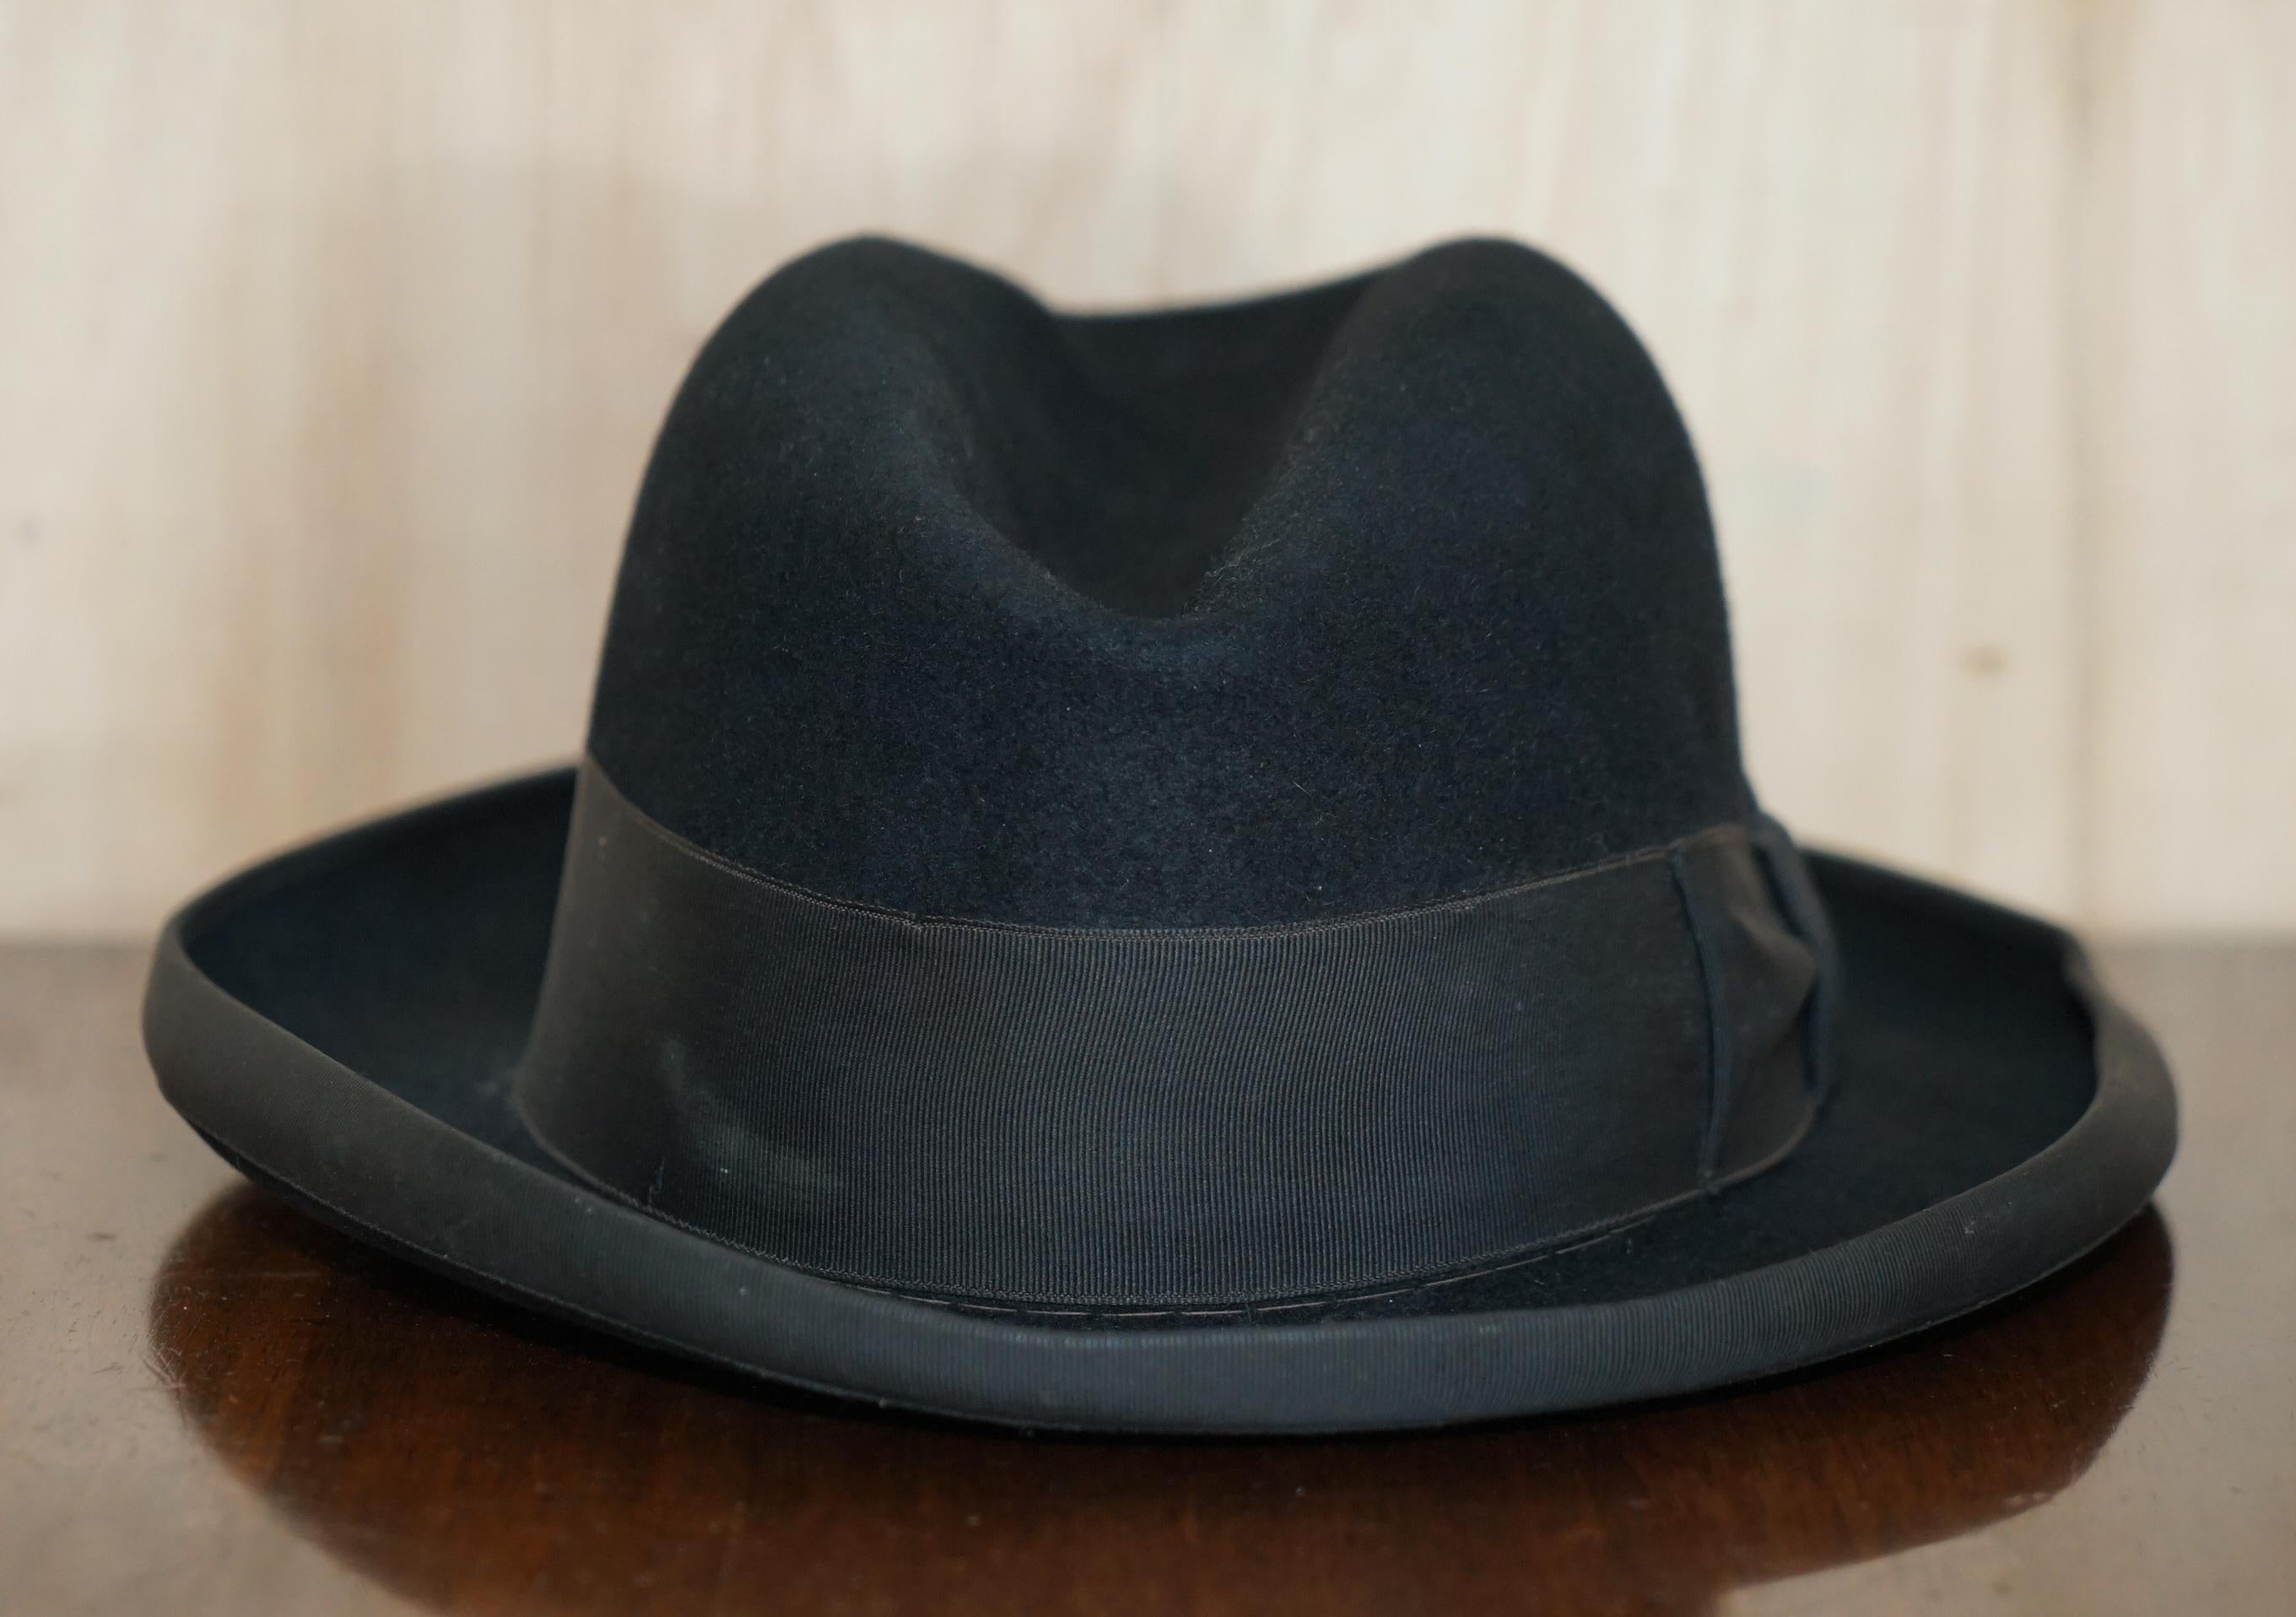 Nous sommes ravis d'offrir à la vente ce superbe chapeau vintage Stetson 3X Quality Trilby.

Cet a est très ancien, il est encore en bon état, entièrement estampillé à l'intérieur pour la boutique pour hommes Selfridges London et